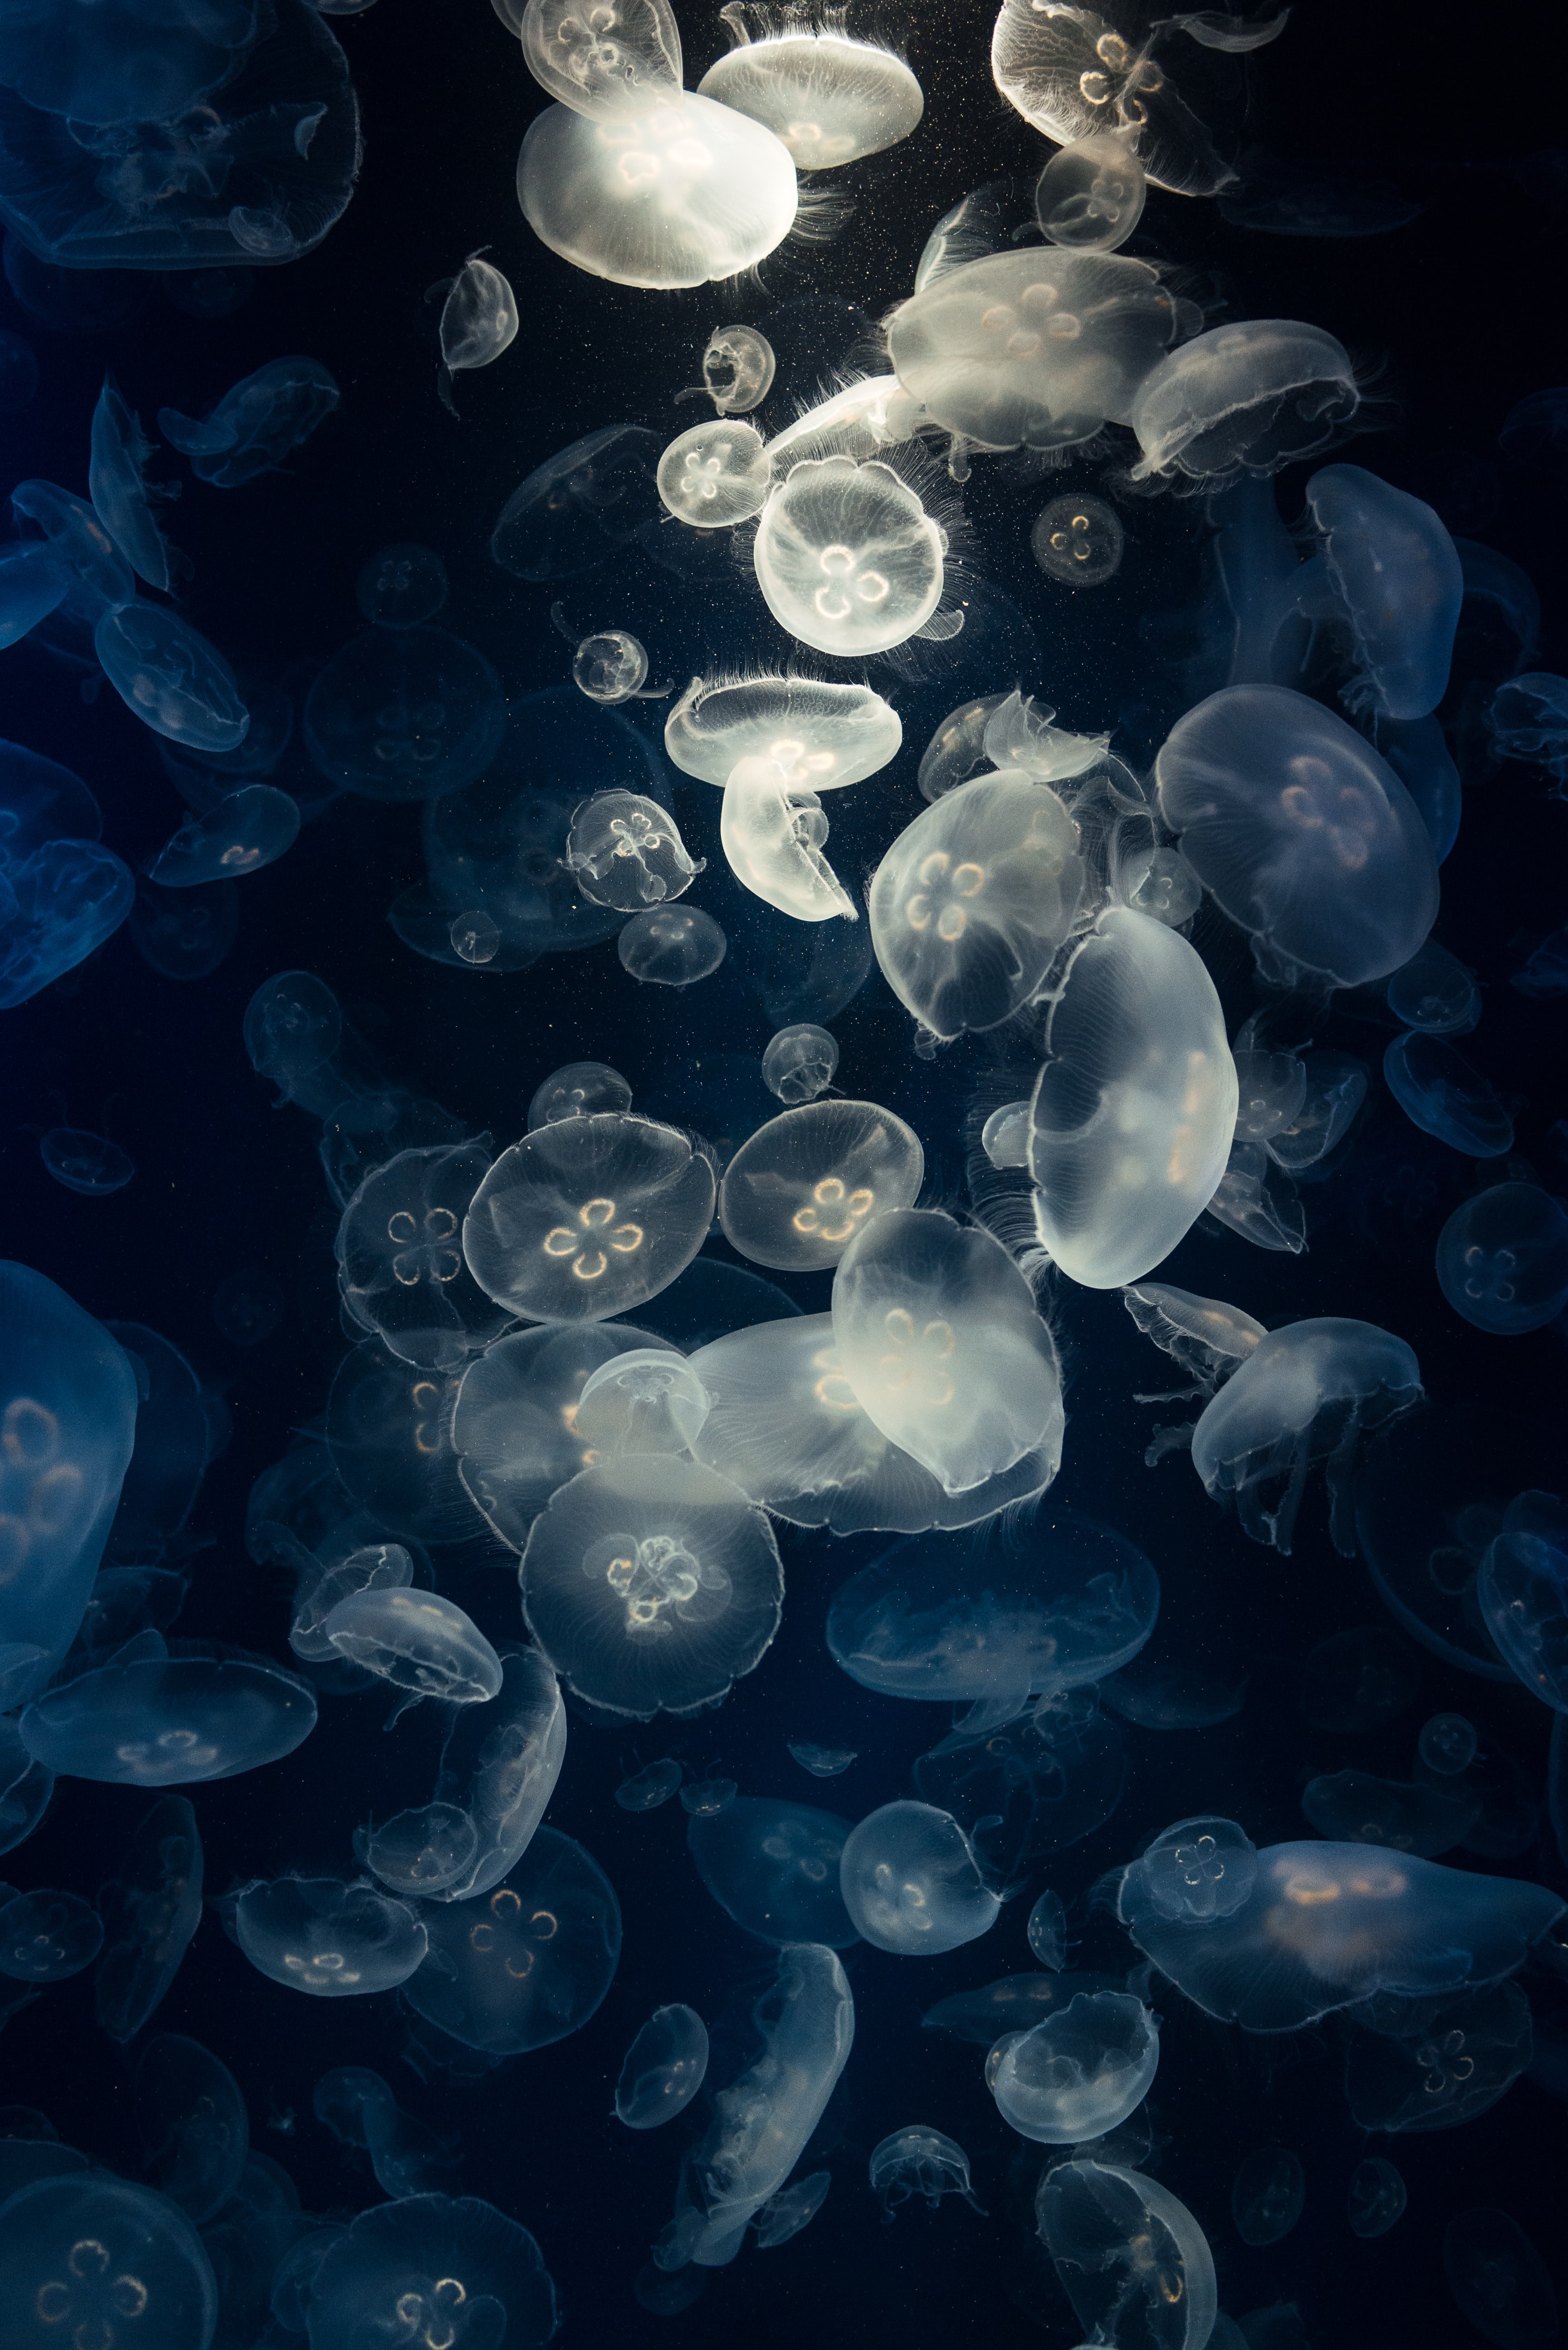 jellyfish, animals, glow, creatures, under water, underwater mobile wallpaper